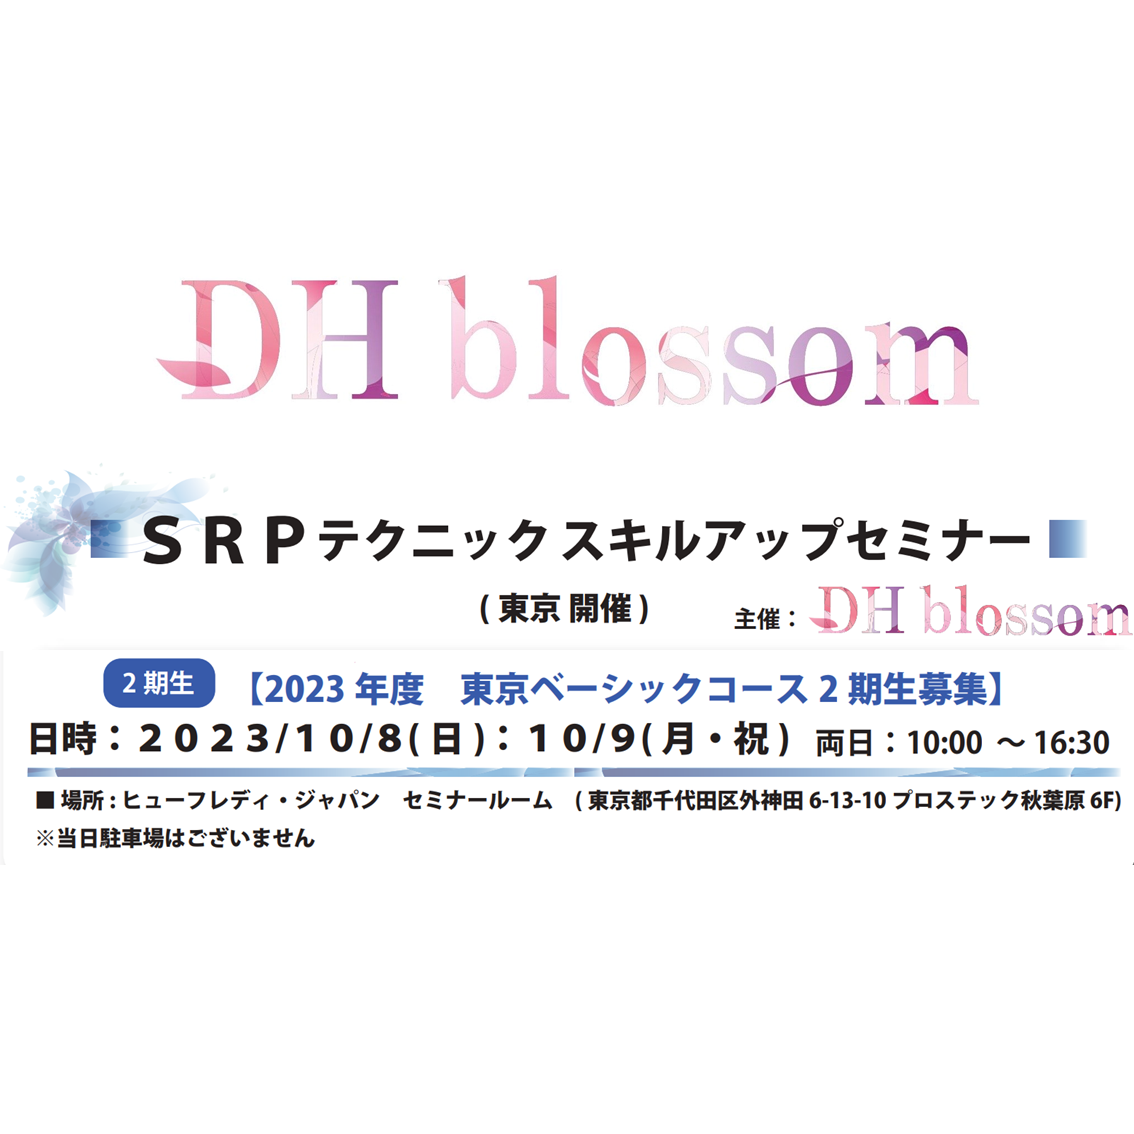 【東京開催】DHblossom SRPテクニックスキルアップセミナー(2期生募集)